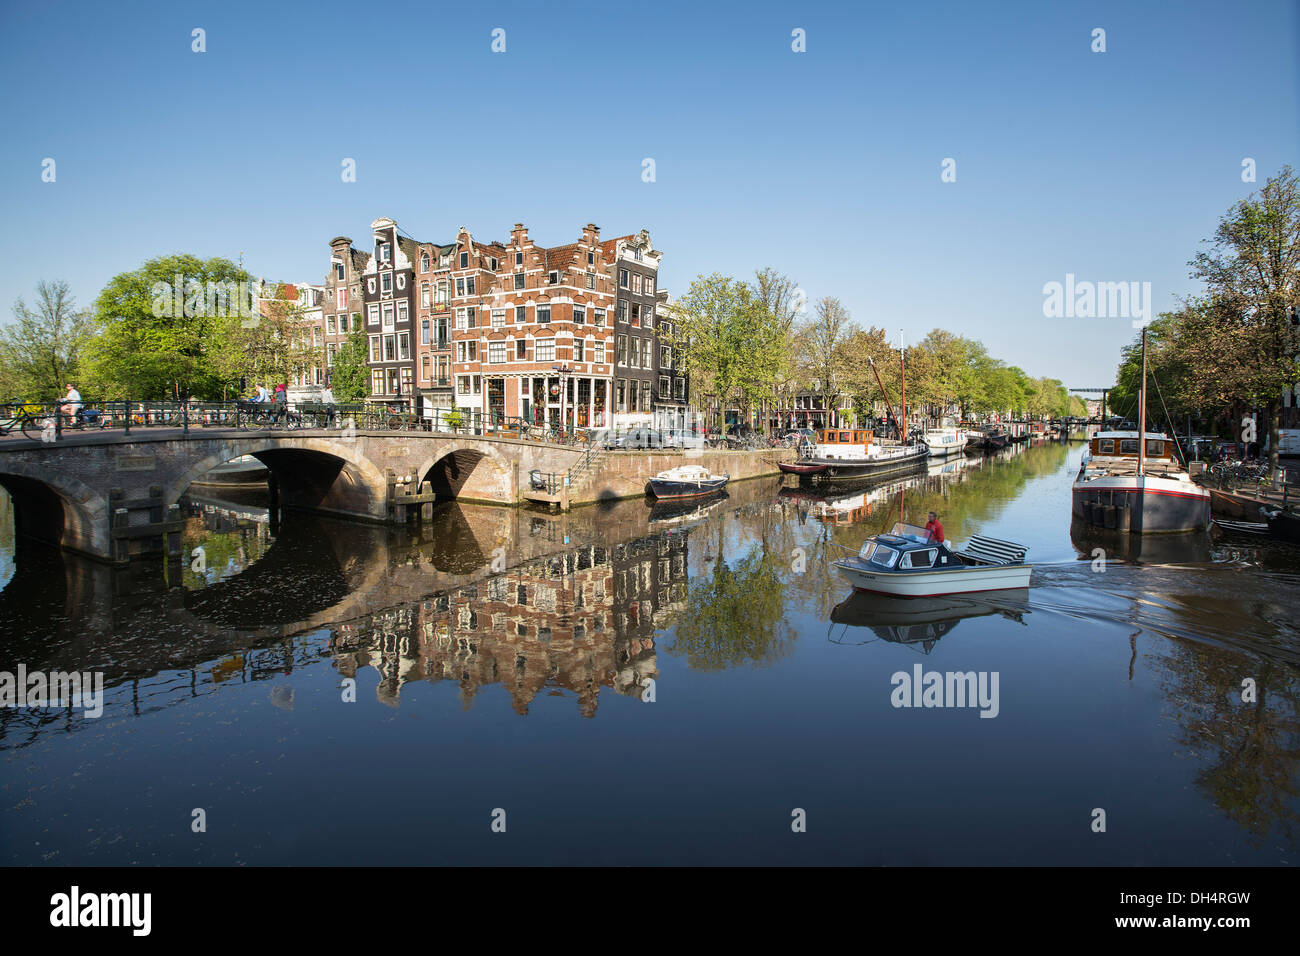 Niederlande, Amsterdam, beherbergt 17. Jahrhundert, Hausboote, kleines Boot am Kanal namens Brouwersgracht. UNESCO-Weltkulturerbe Stockfoto